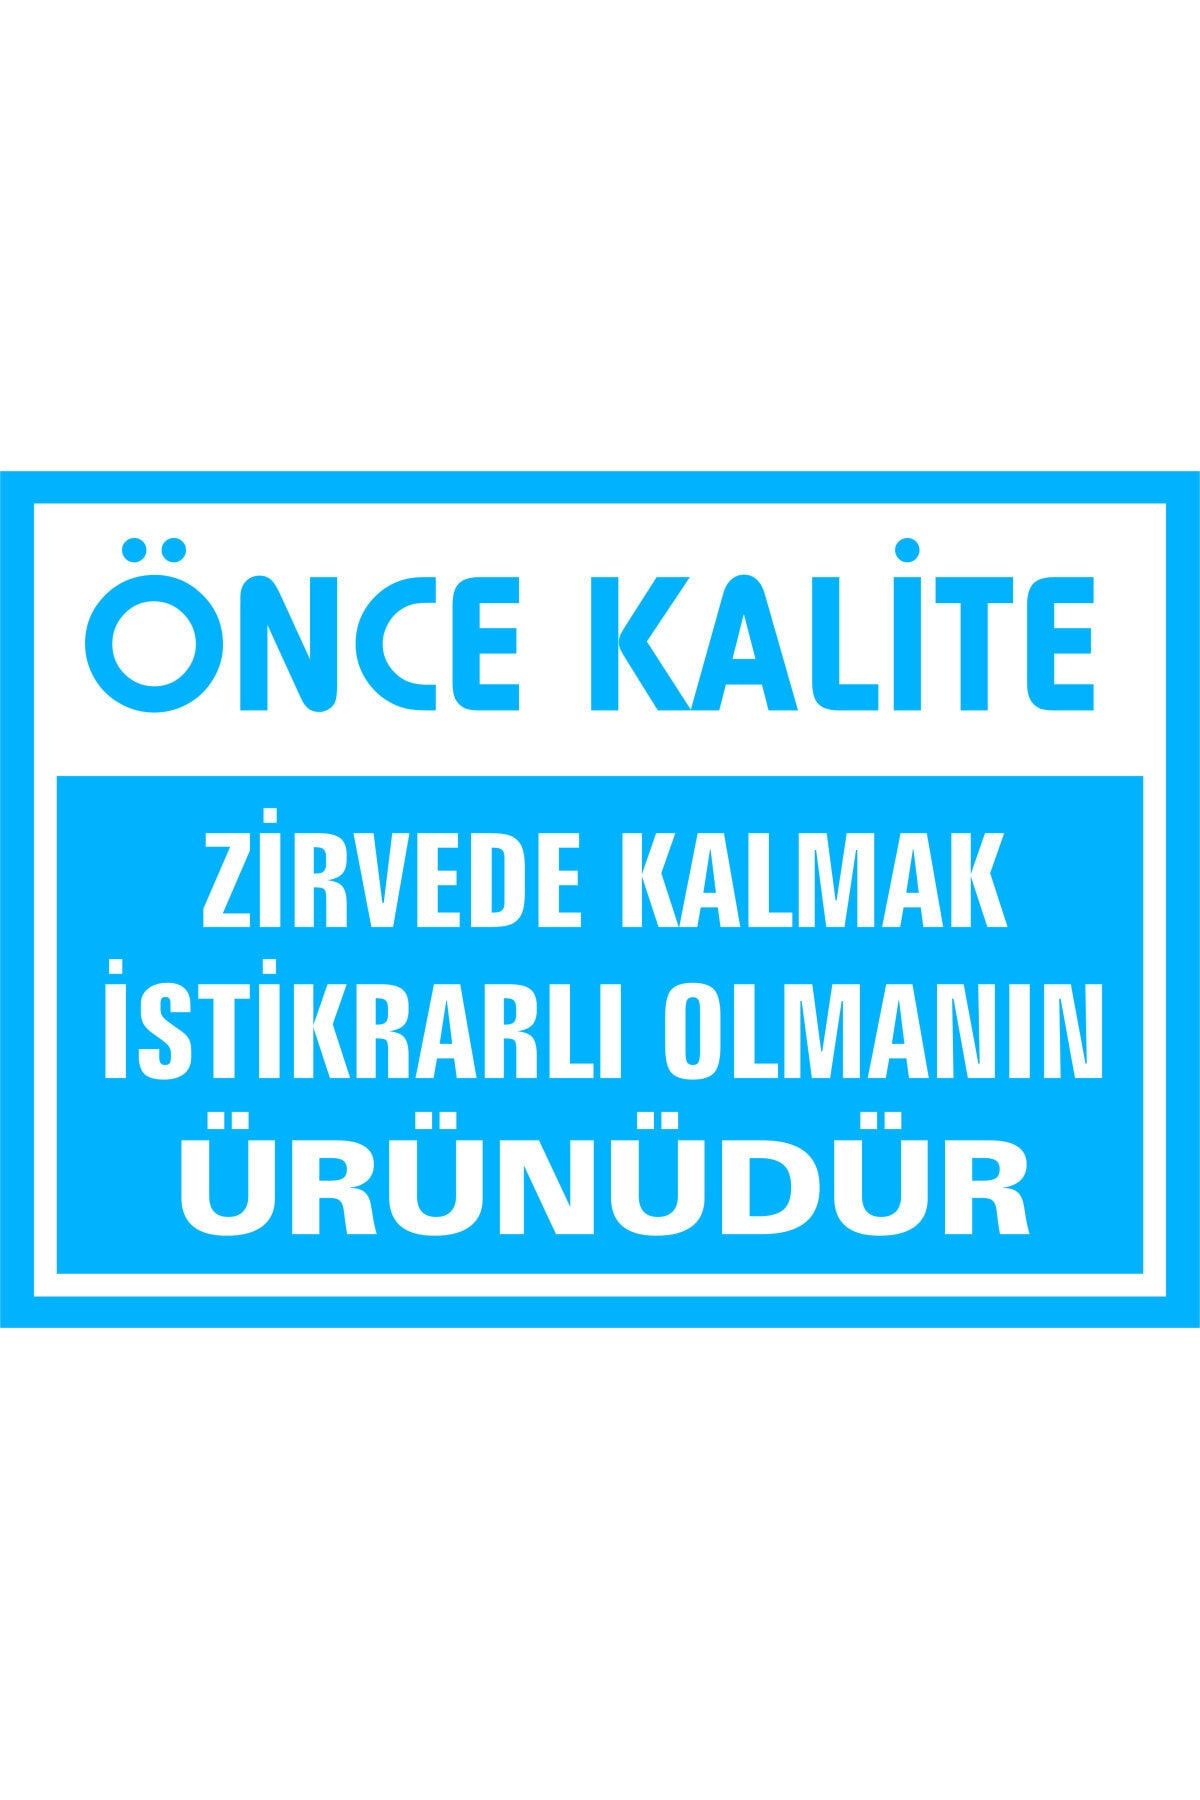 İzmir Serigrafi Önce Kalite Zirvede Kalmak Istikrarlı Olmanın Ürünüdür 3mm Dekota Uyarı Levhası 17,5 X 25 Cm